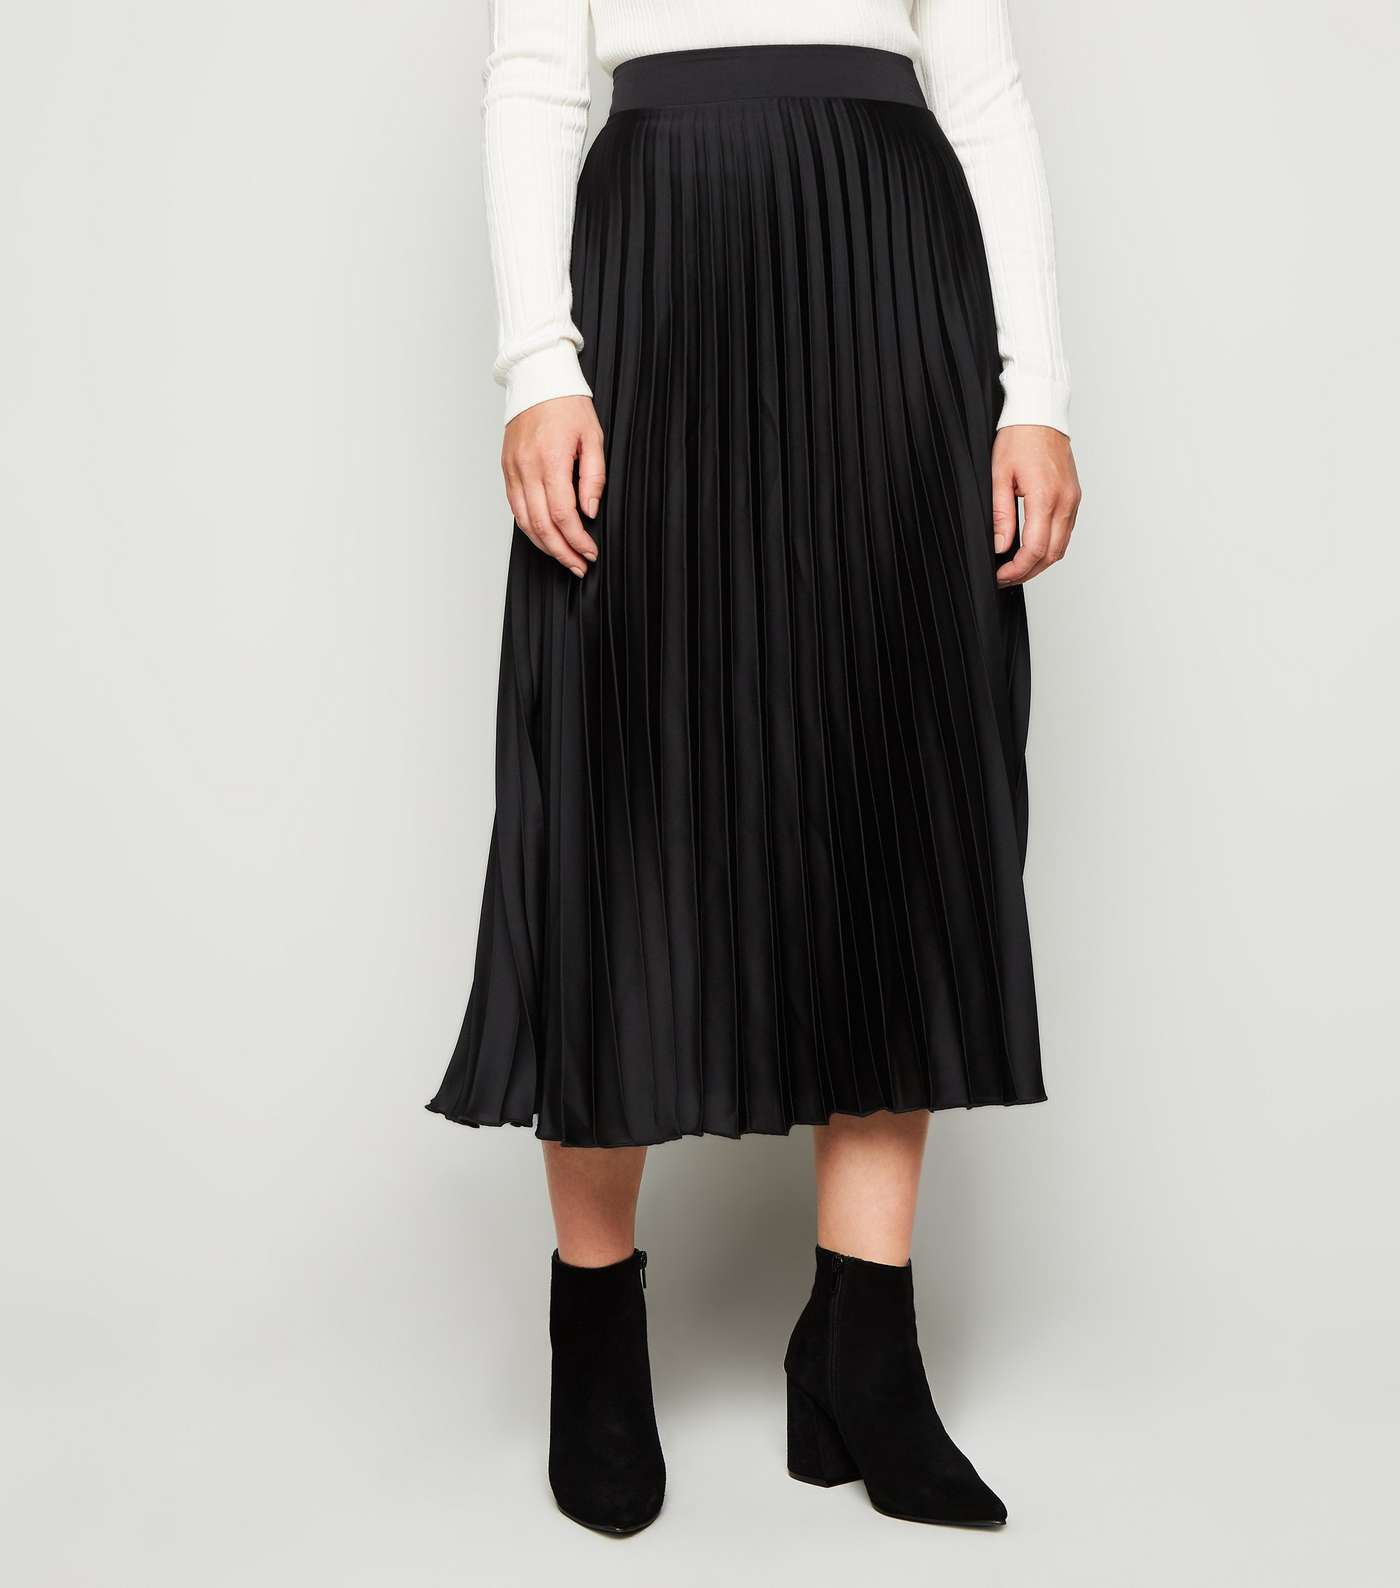 Petite Black Satin Pleated Midi Skirt Image 2